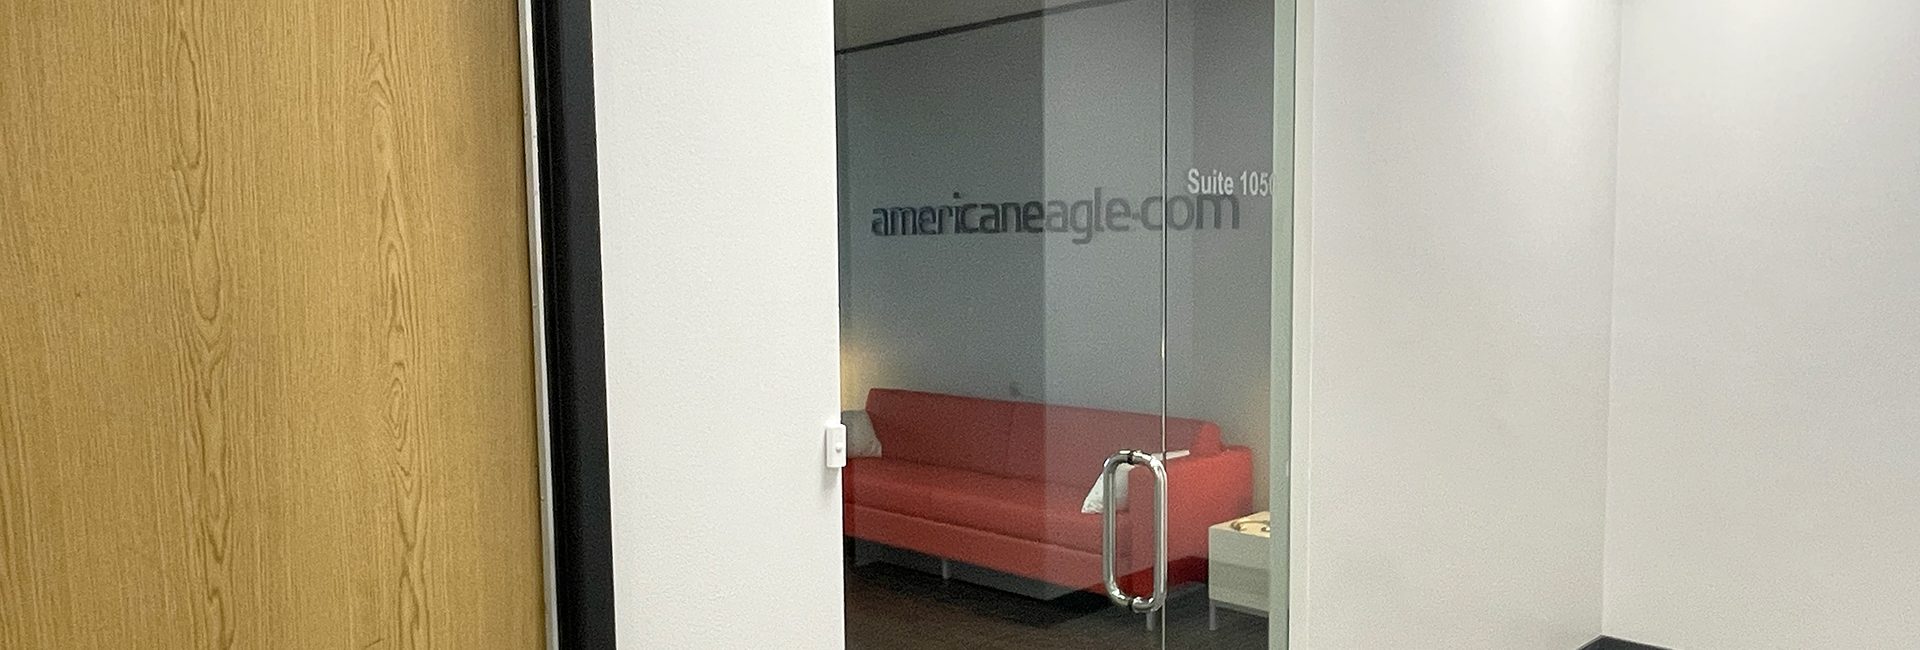 Americaneagle.com, Inc. 5